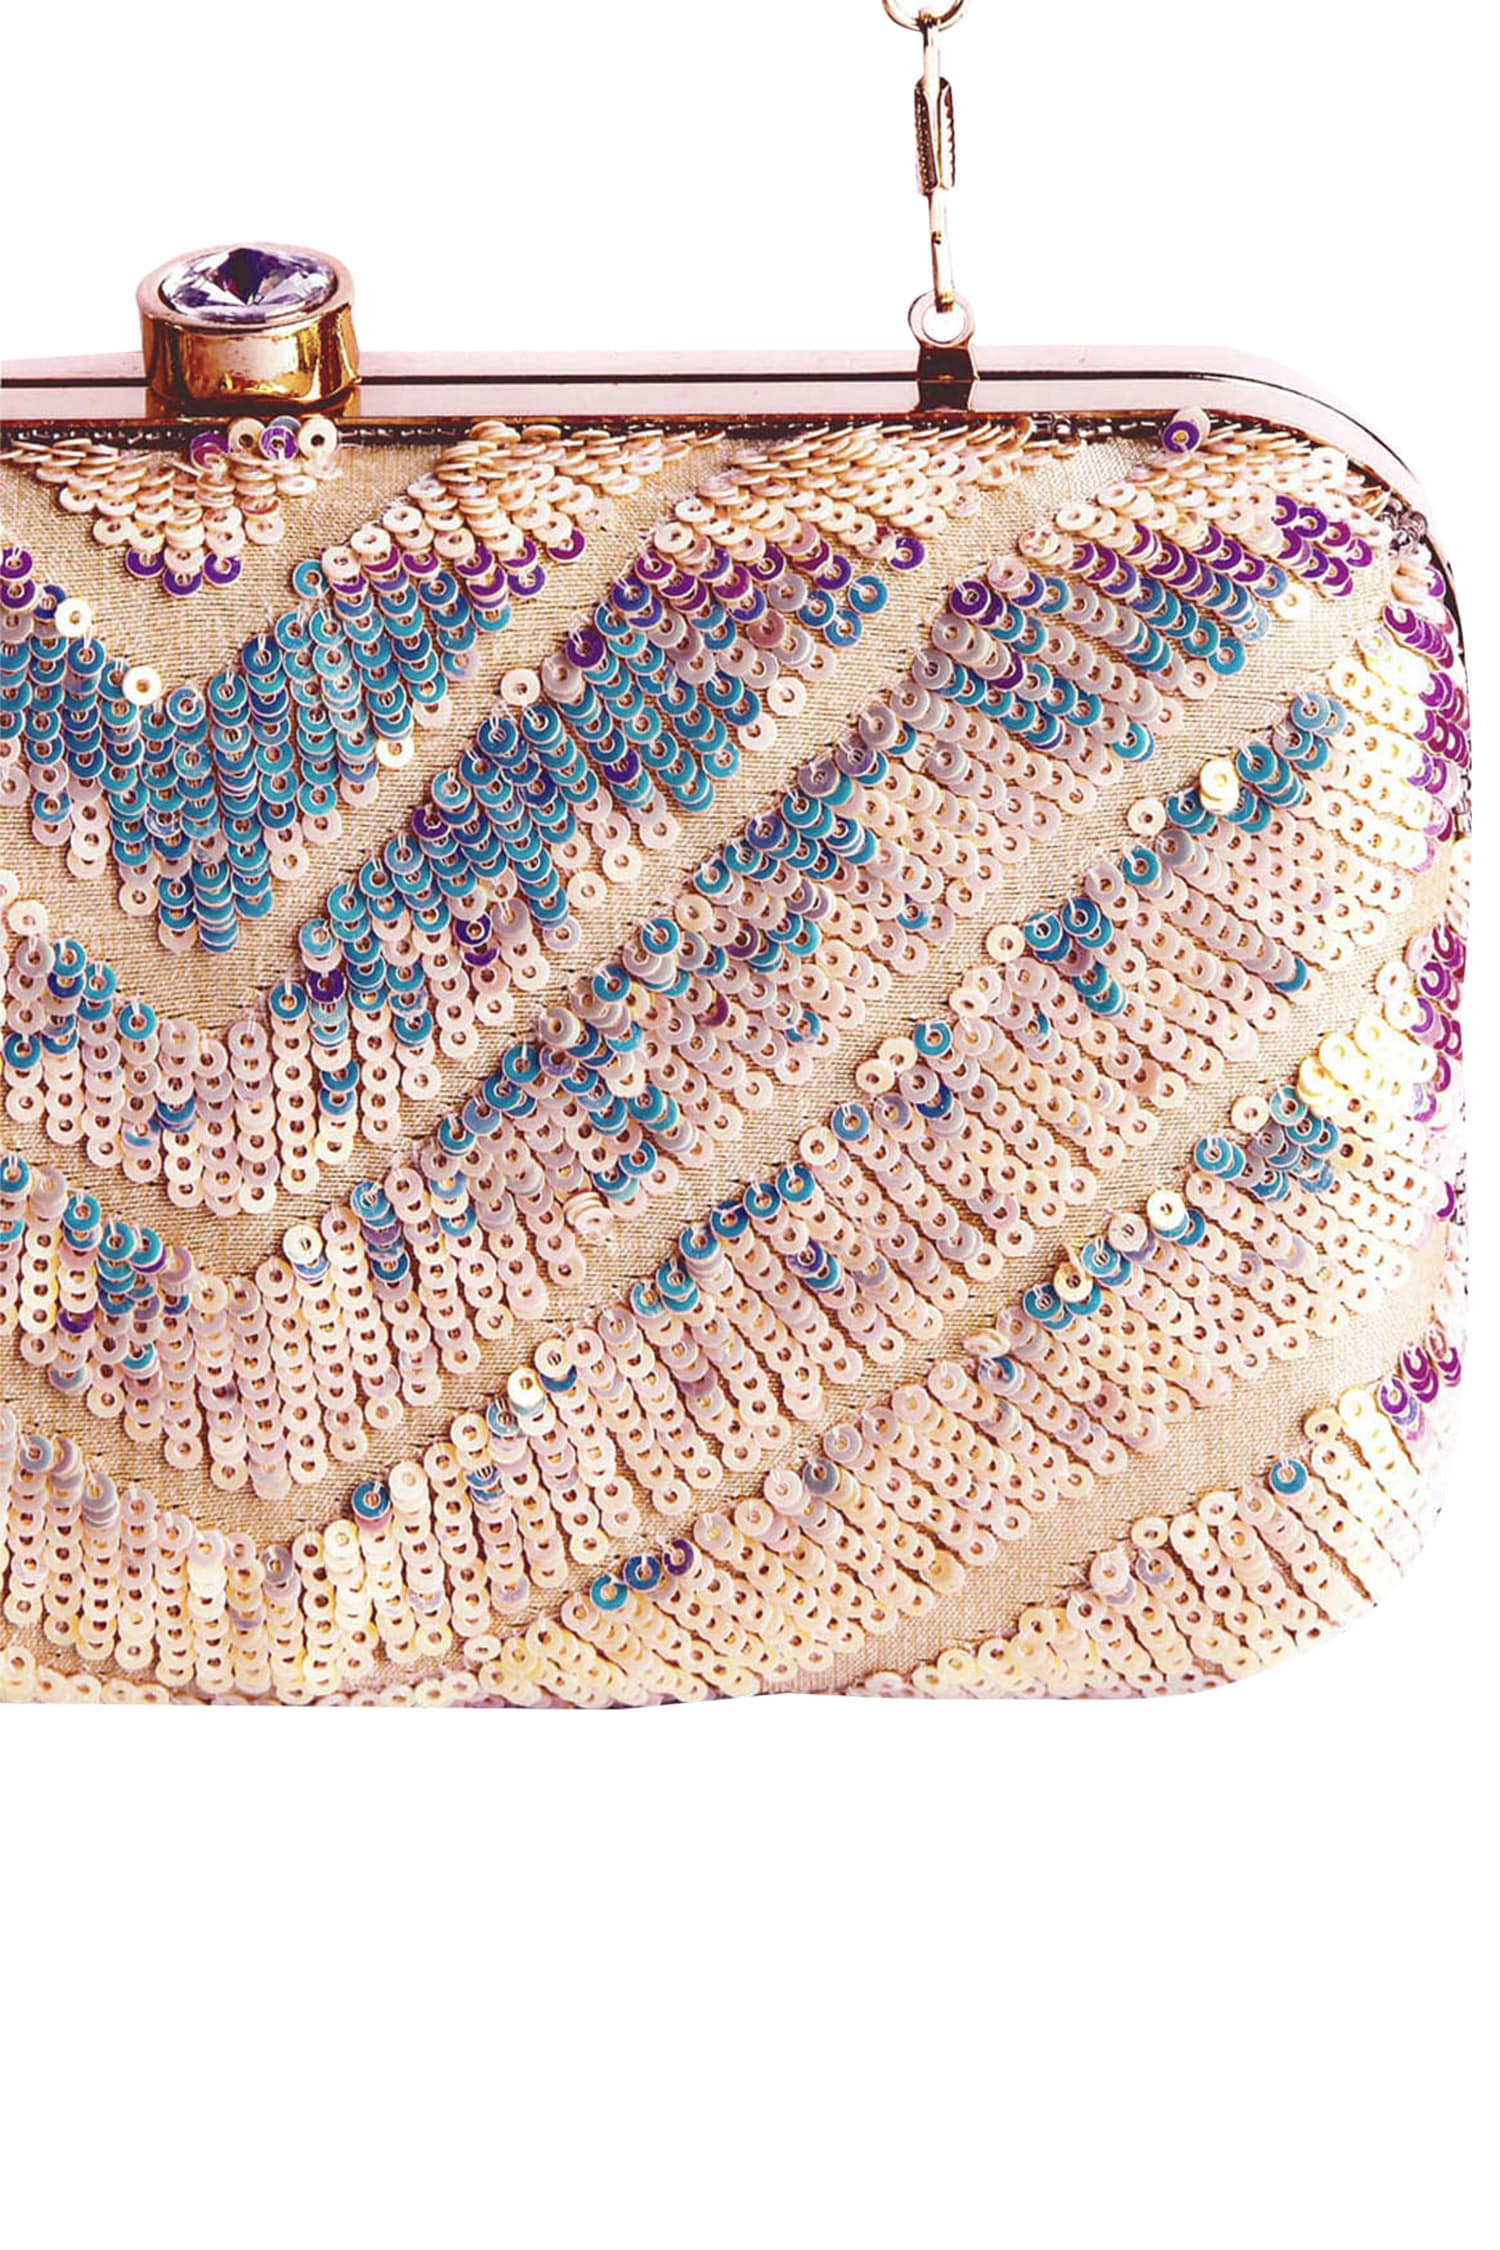 Women Handbag Clutch Purse Sequin Elegant Evening Bag(Gold) - Walmart.com